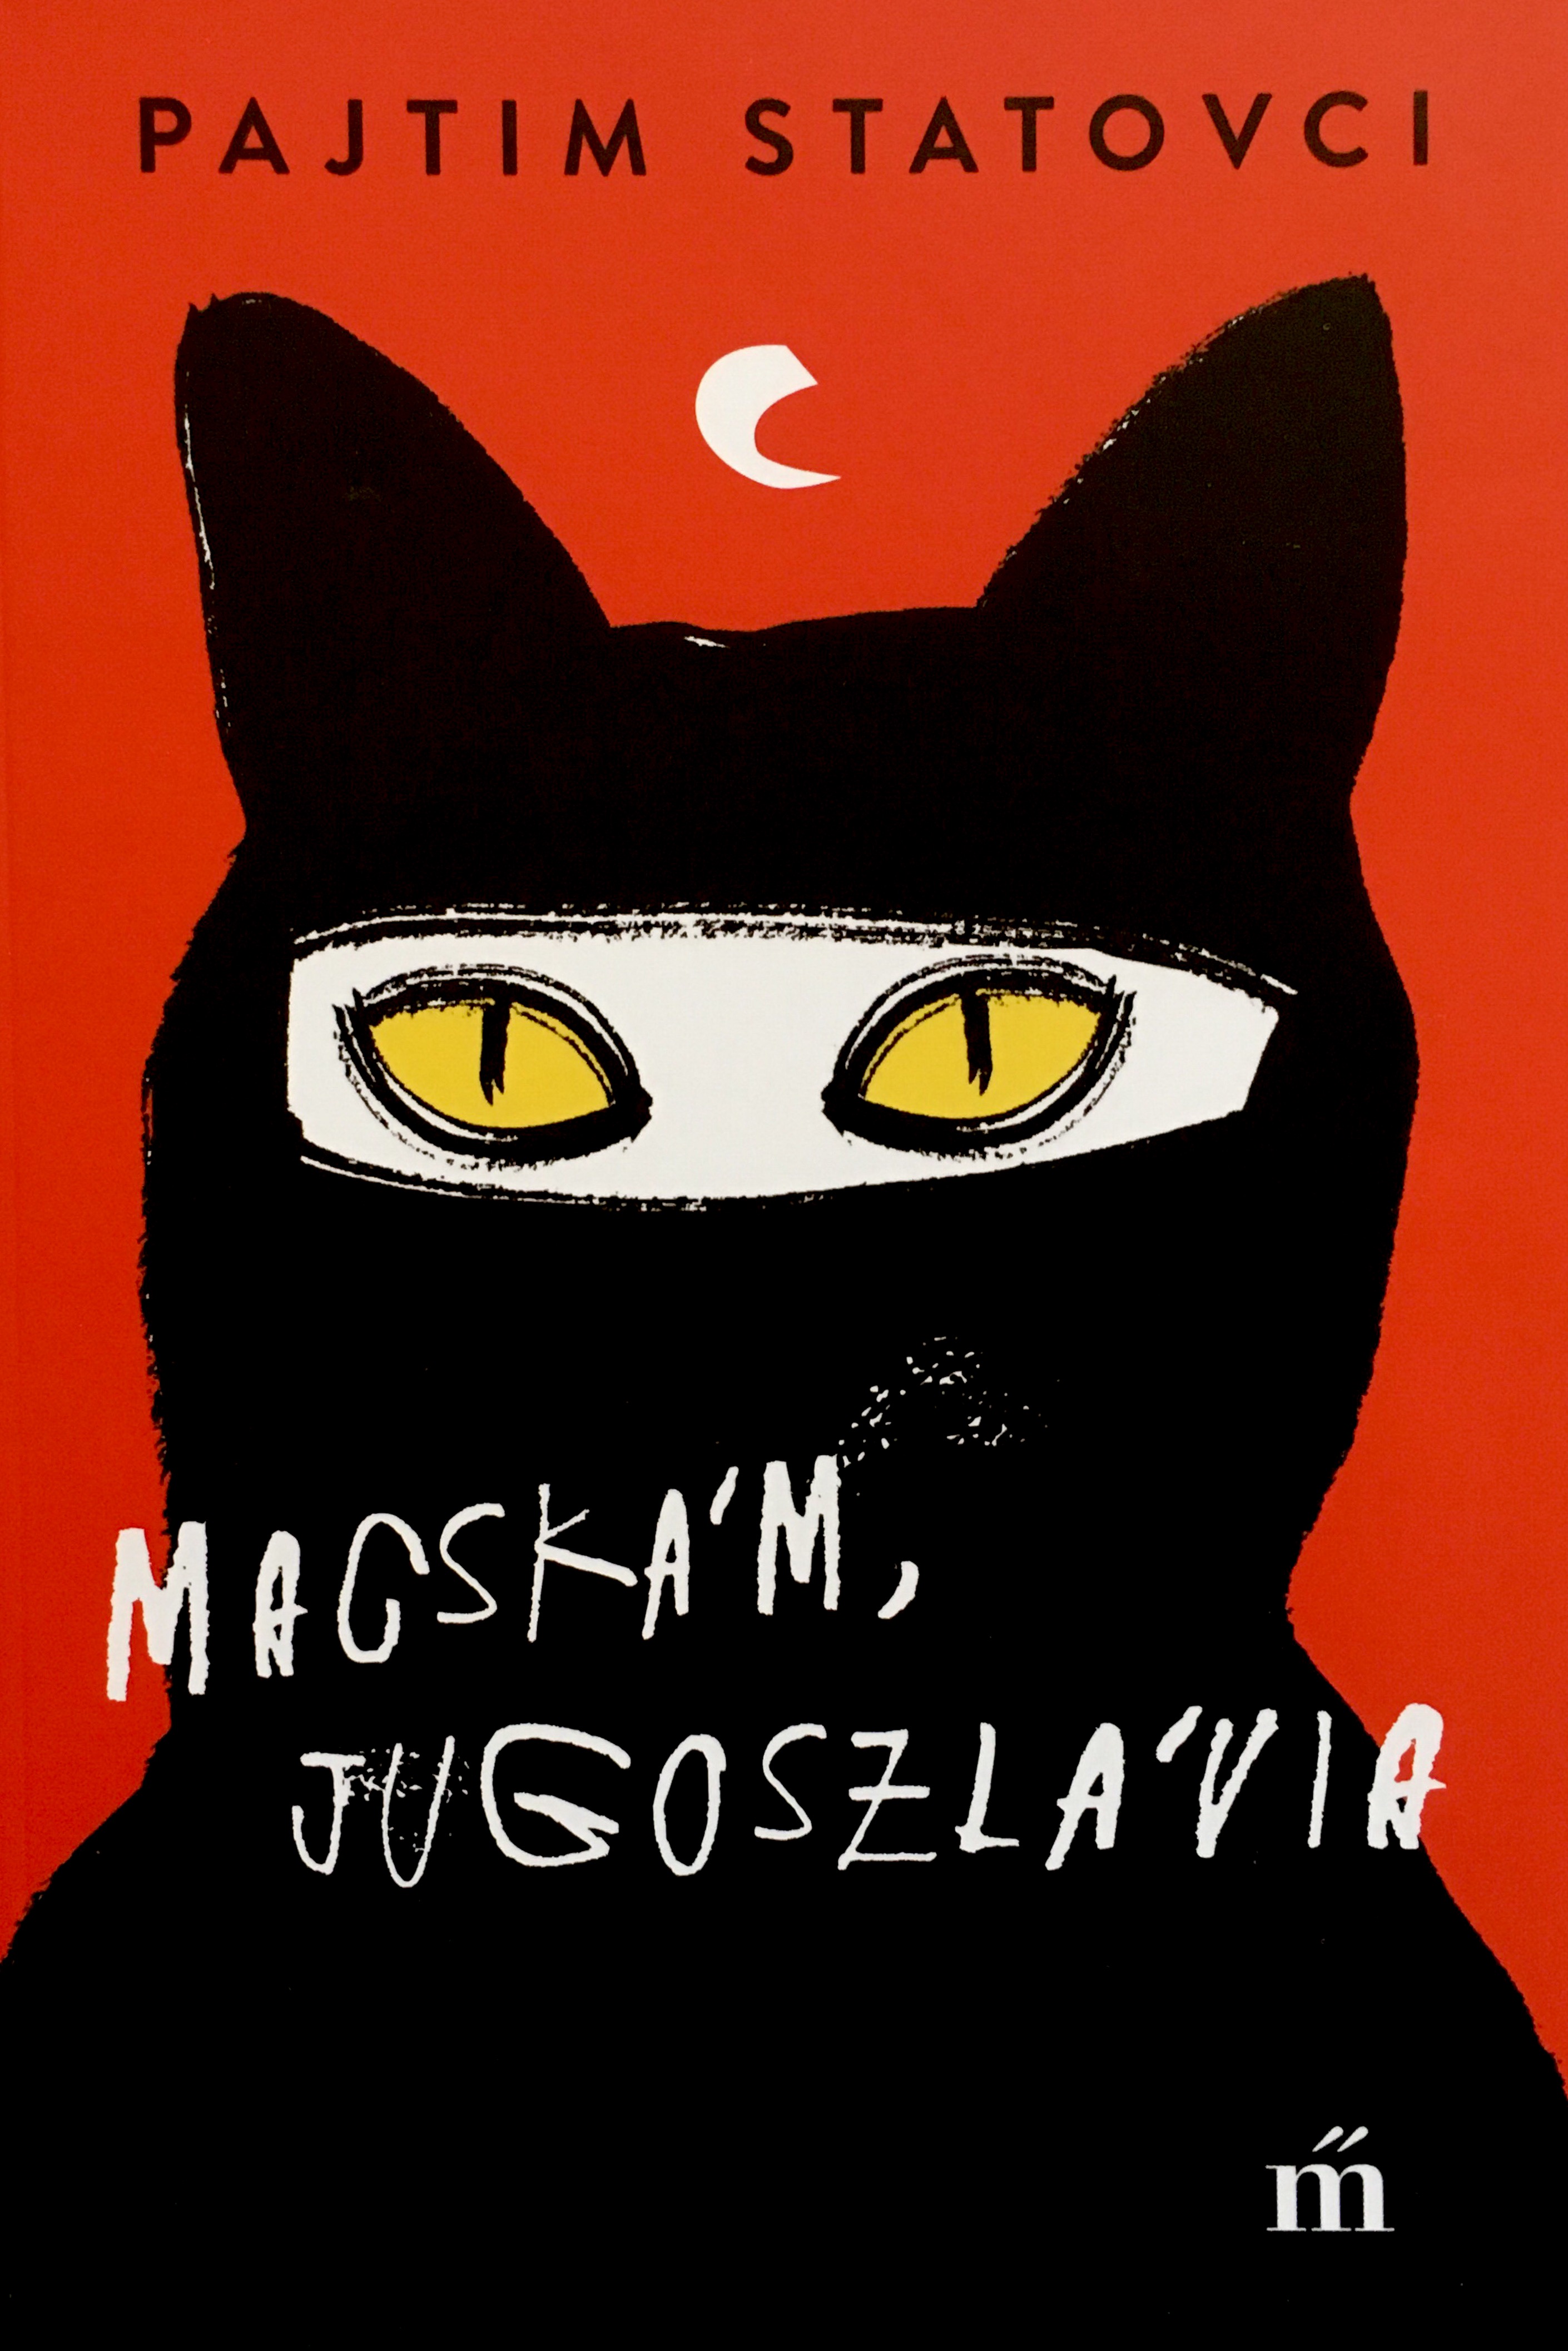 macskam_jugoszlavia02.jpg